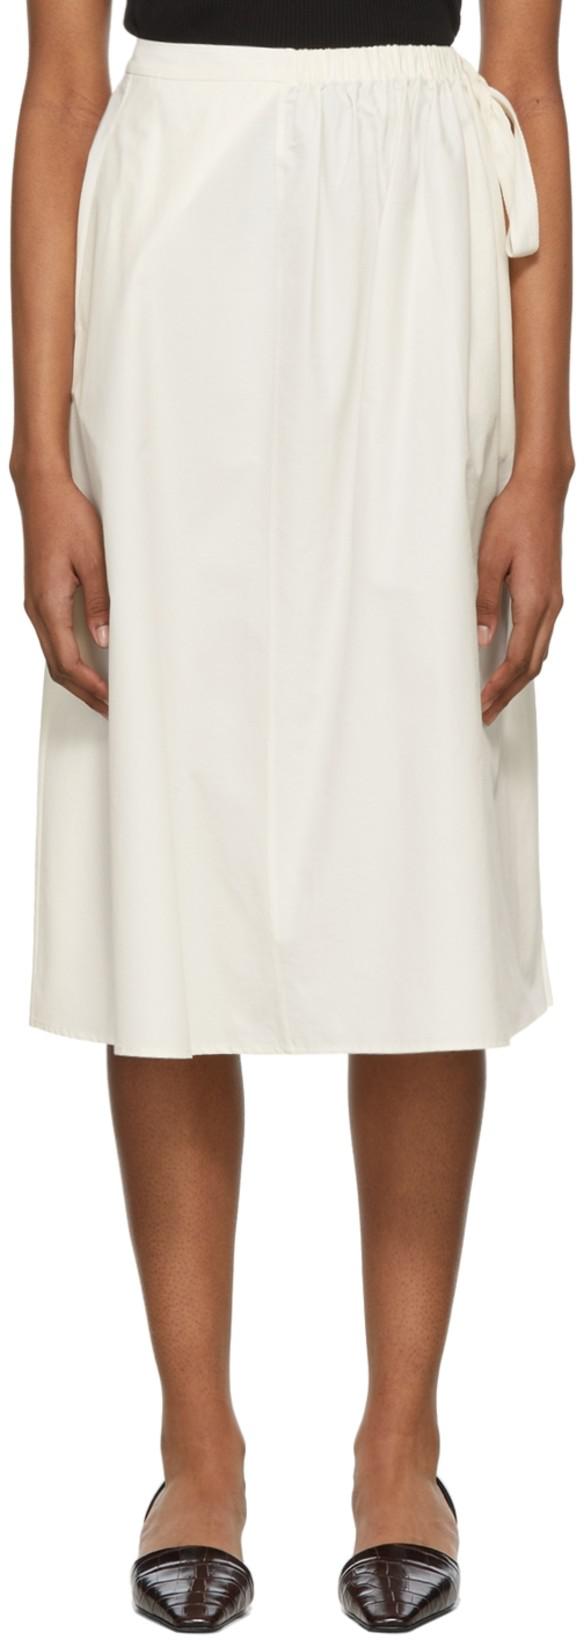 White Poplin Jillian Skirt by DEVEAUX NEW YORK